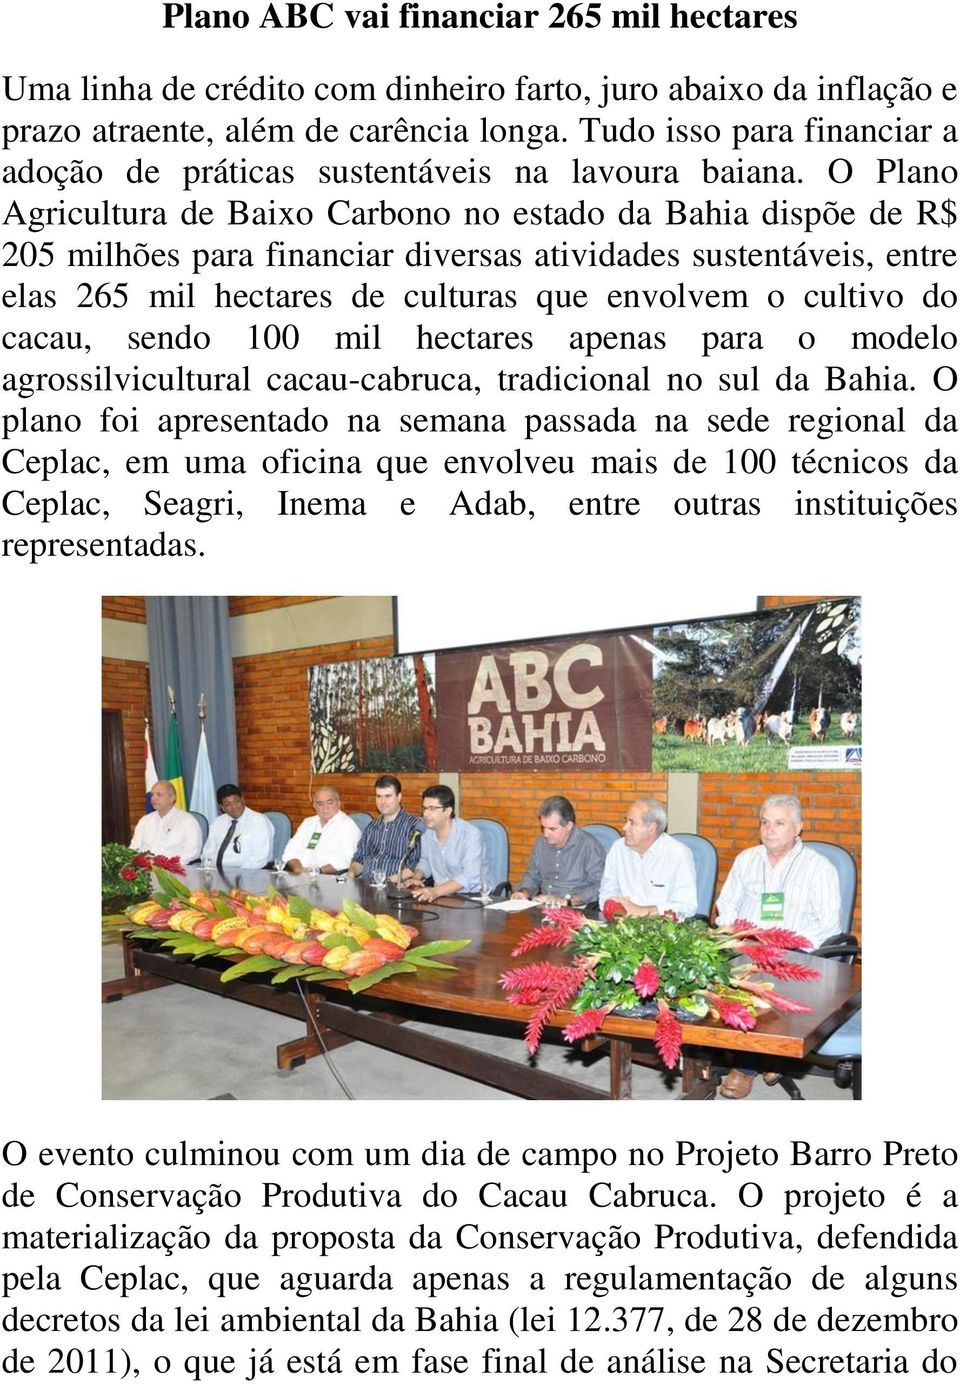 O Plano Agricultura de Baixo Carbono no estado da Bahia dispõe de R$ 205 milhões para financiar diversas atividades sustentáveis, entre elas 265 mil hectares de culturas que envolvem o cultivo do